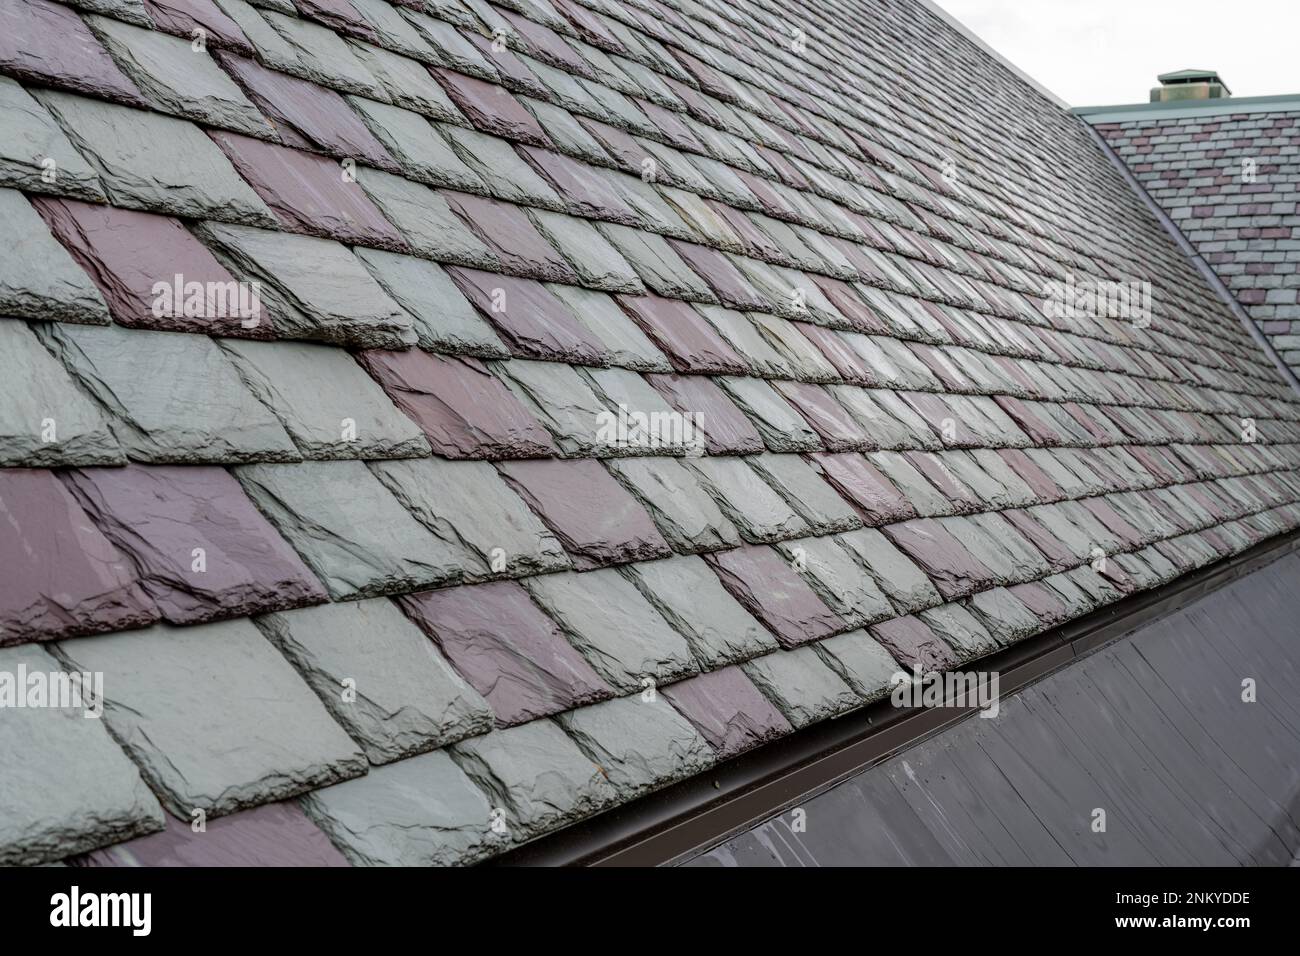 Tuiles de toiture en ardoise sur un bâtiment historique. Matériau de couverture attrayant et durable. Banque D'Images